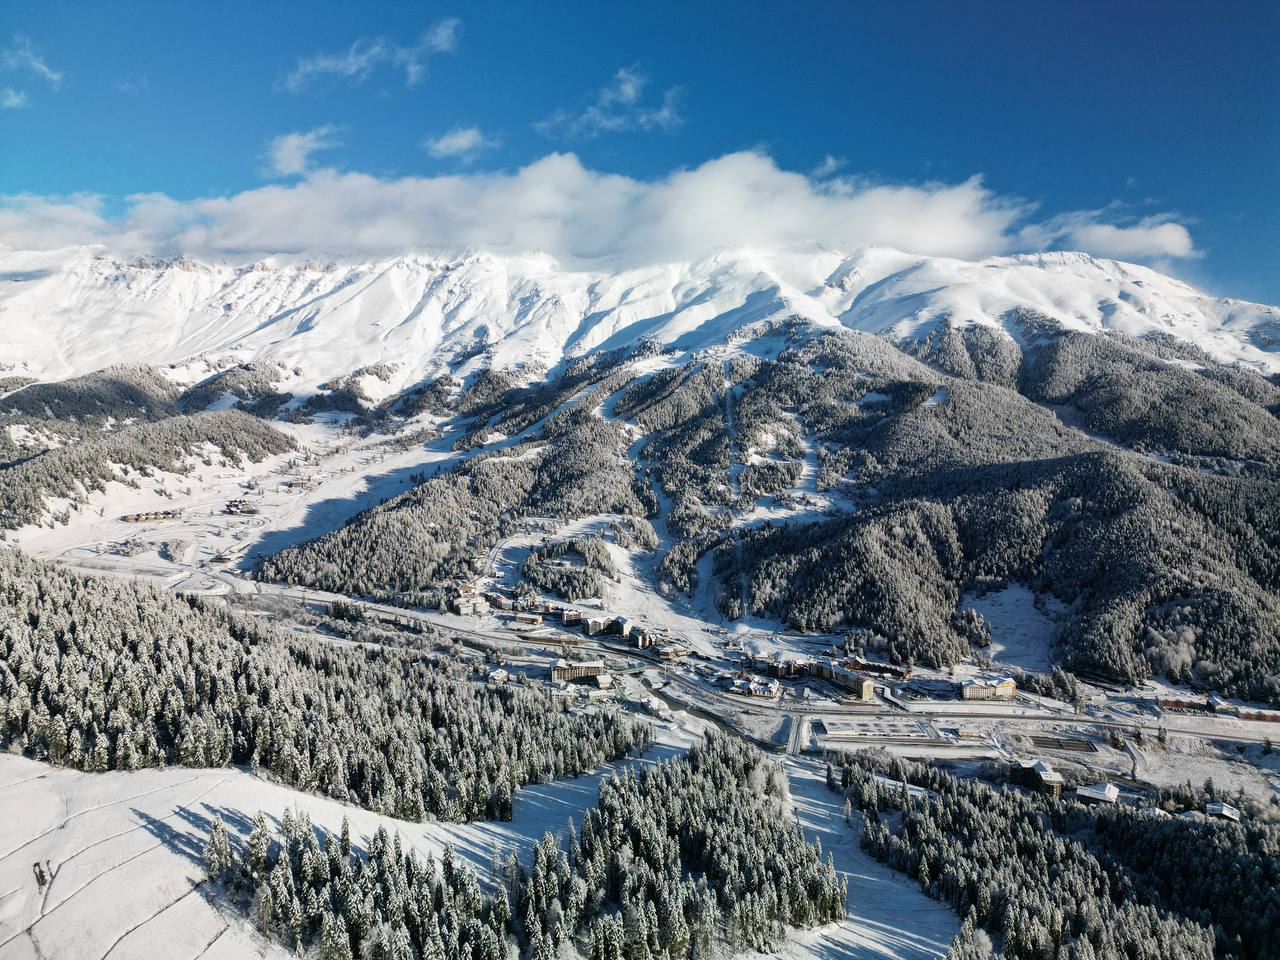 15% онлайн-бронирований горнолыжных курортов на новогодние праздники пришлось на курорты Карачаево-Черкесии